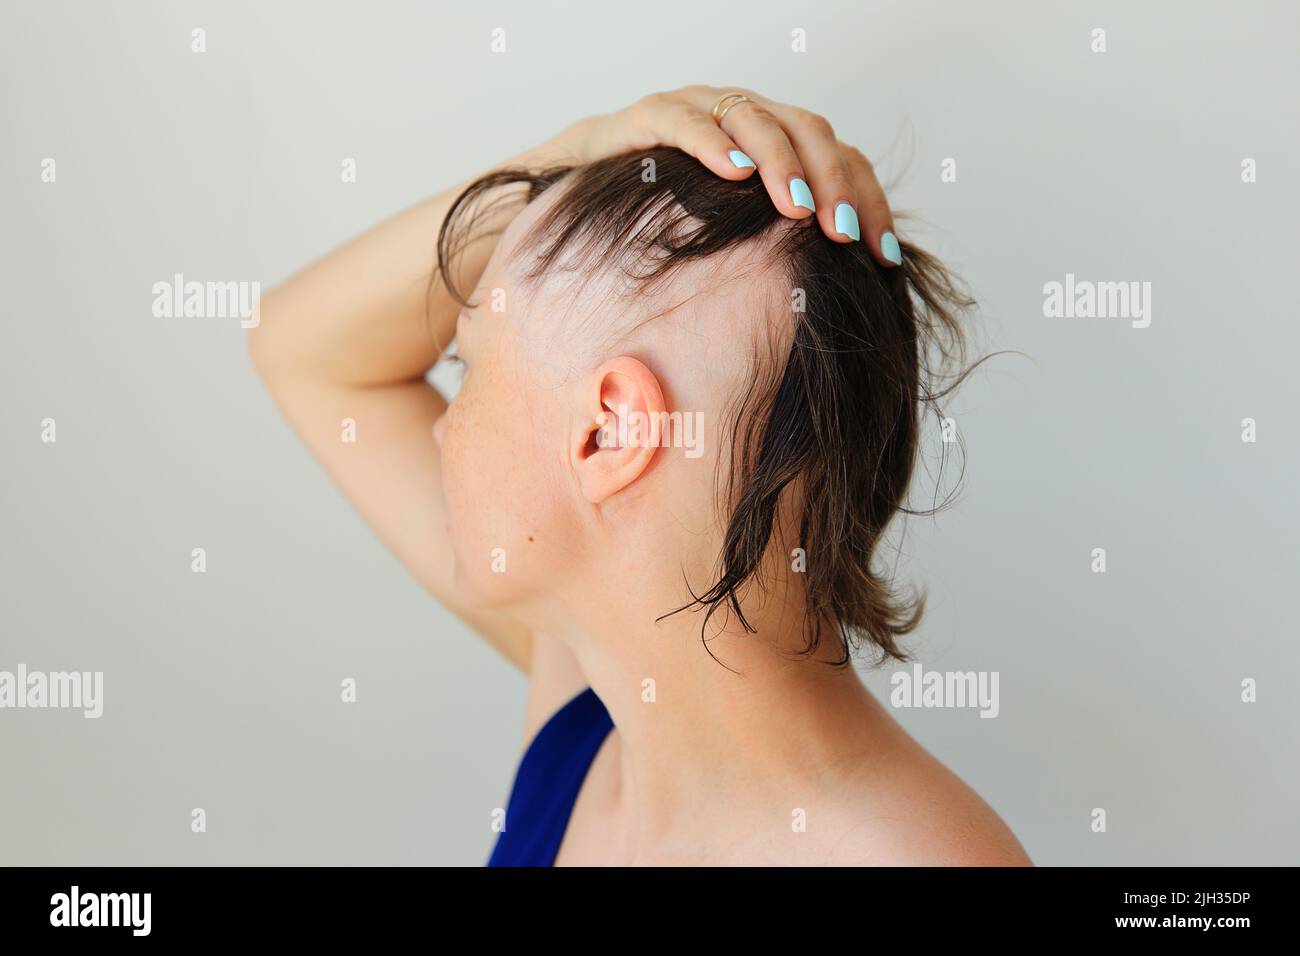 Perdita di capelli sotto forma di alopecia areata. Testa calva di una donna. Diradamento dei capelli dopo il covid. Cerotti calvo di alopecia totale Foto Stock